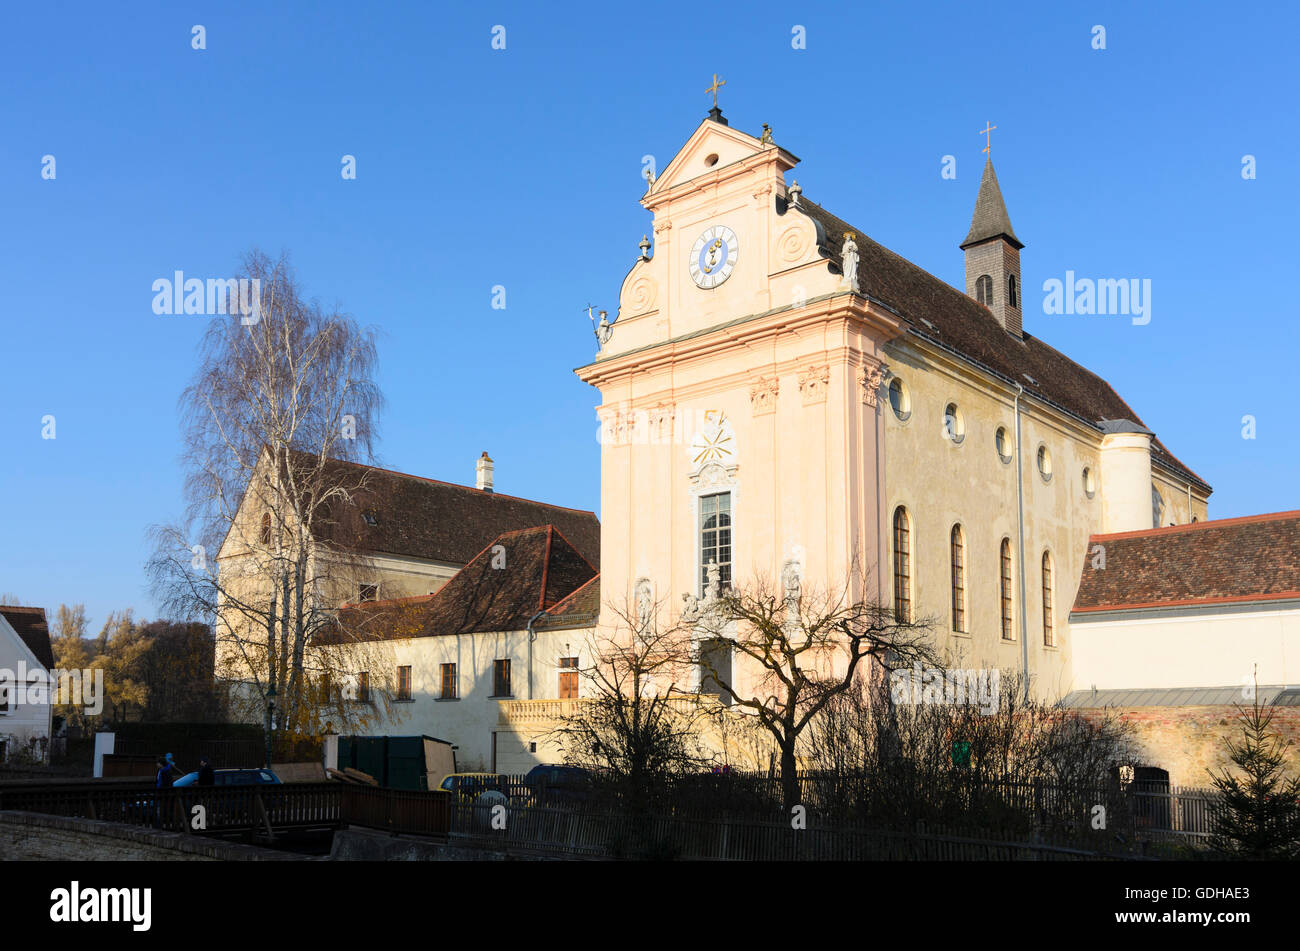 Mauerbach: Monastery Church of the Charterhouse Mauerbach, Austria, Niederösterreich, Lower Austria, Wienerwald, Vienna Woods Stock Photo